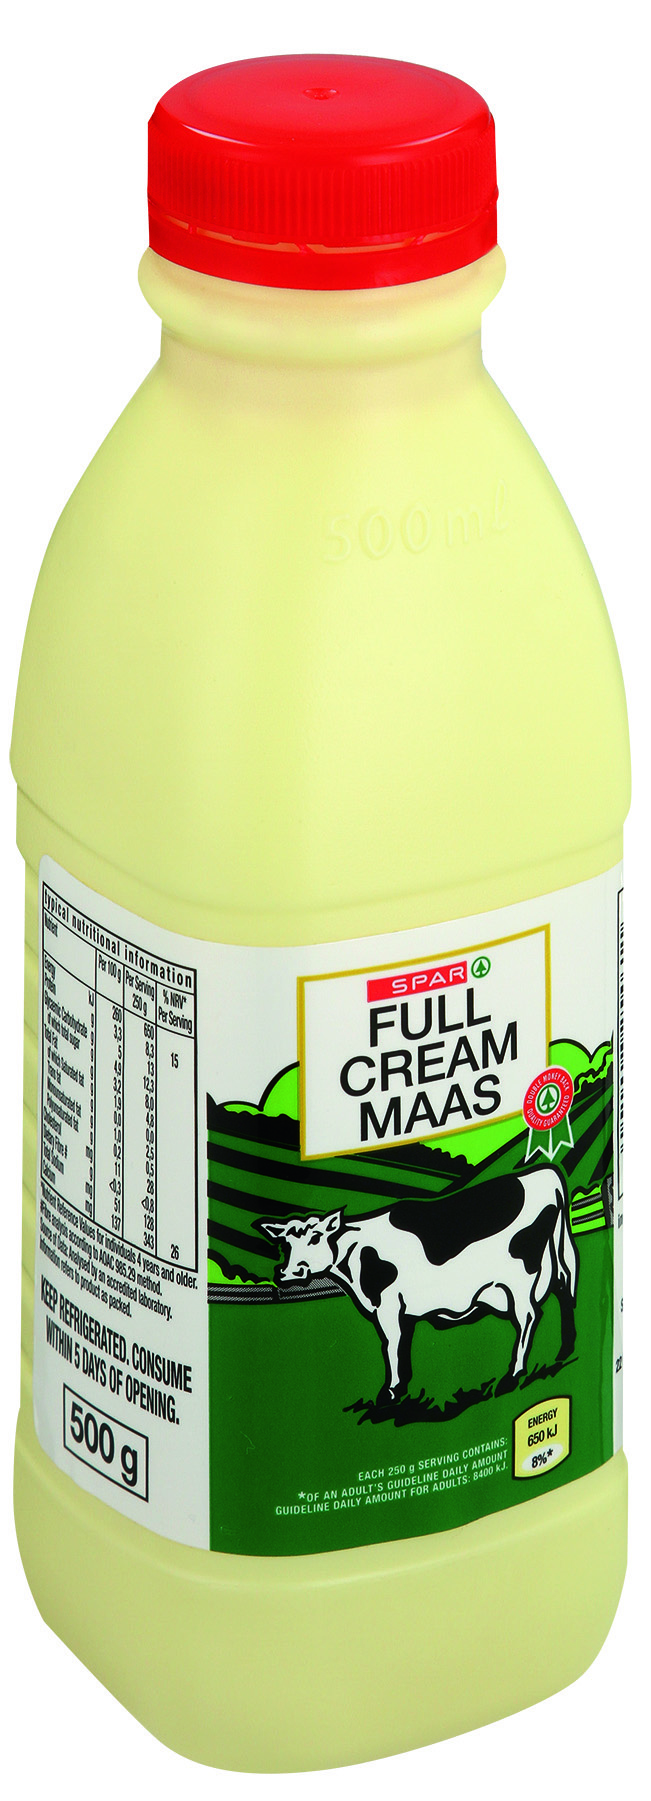 full cream maas